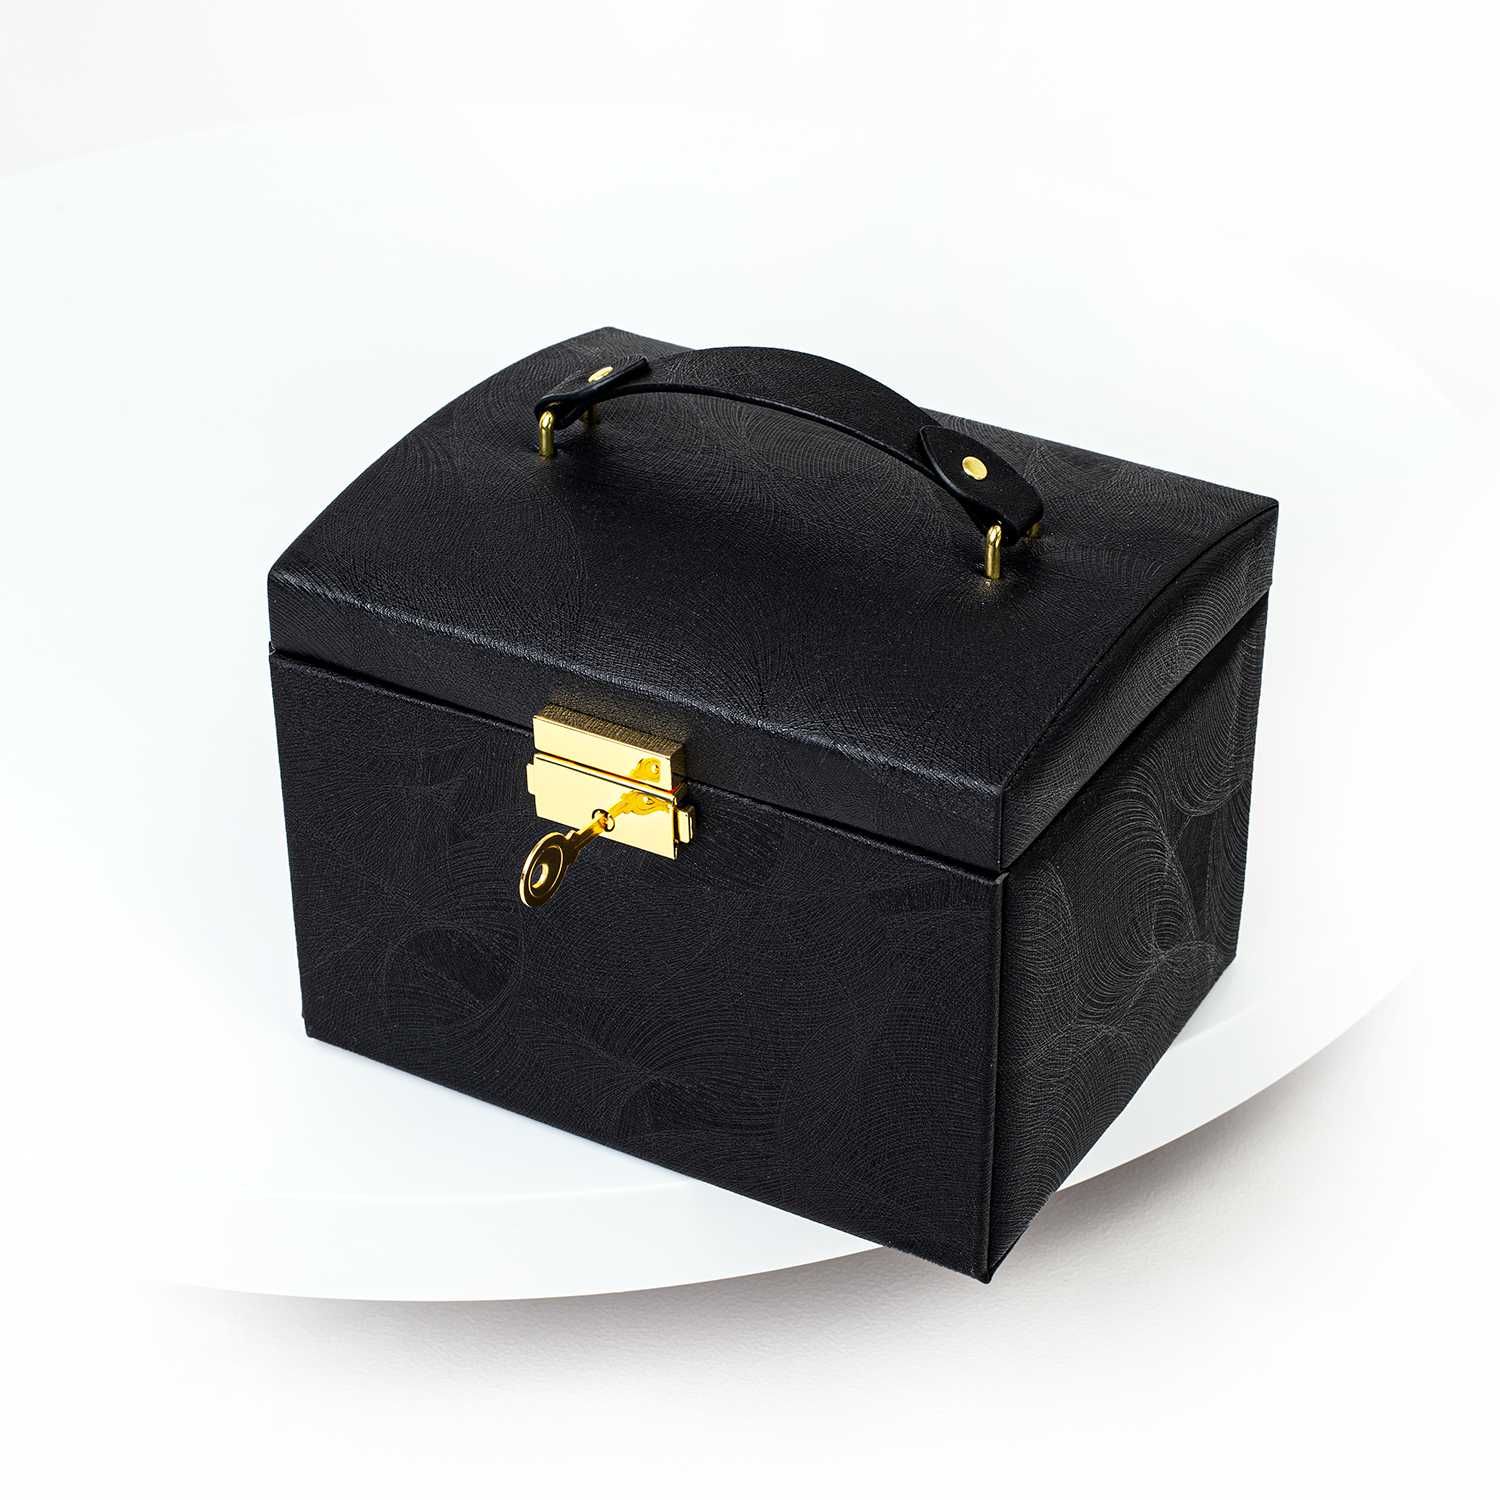 Kuferek na biżuterię z lusterkiem pojemna szkatułka PB04 czarny